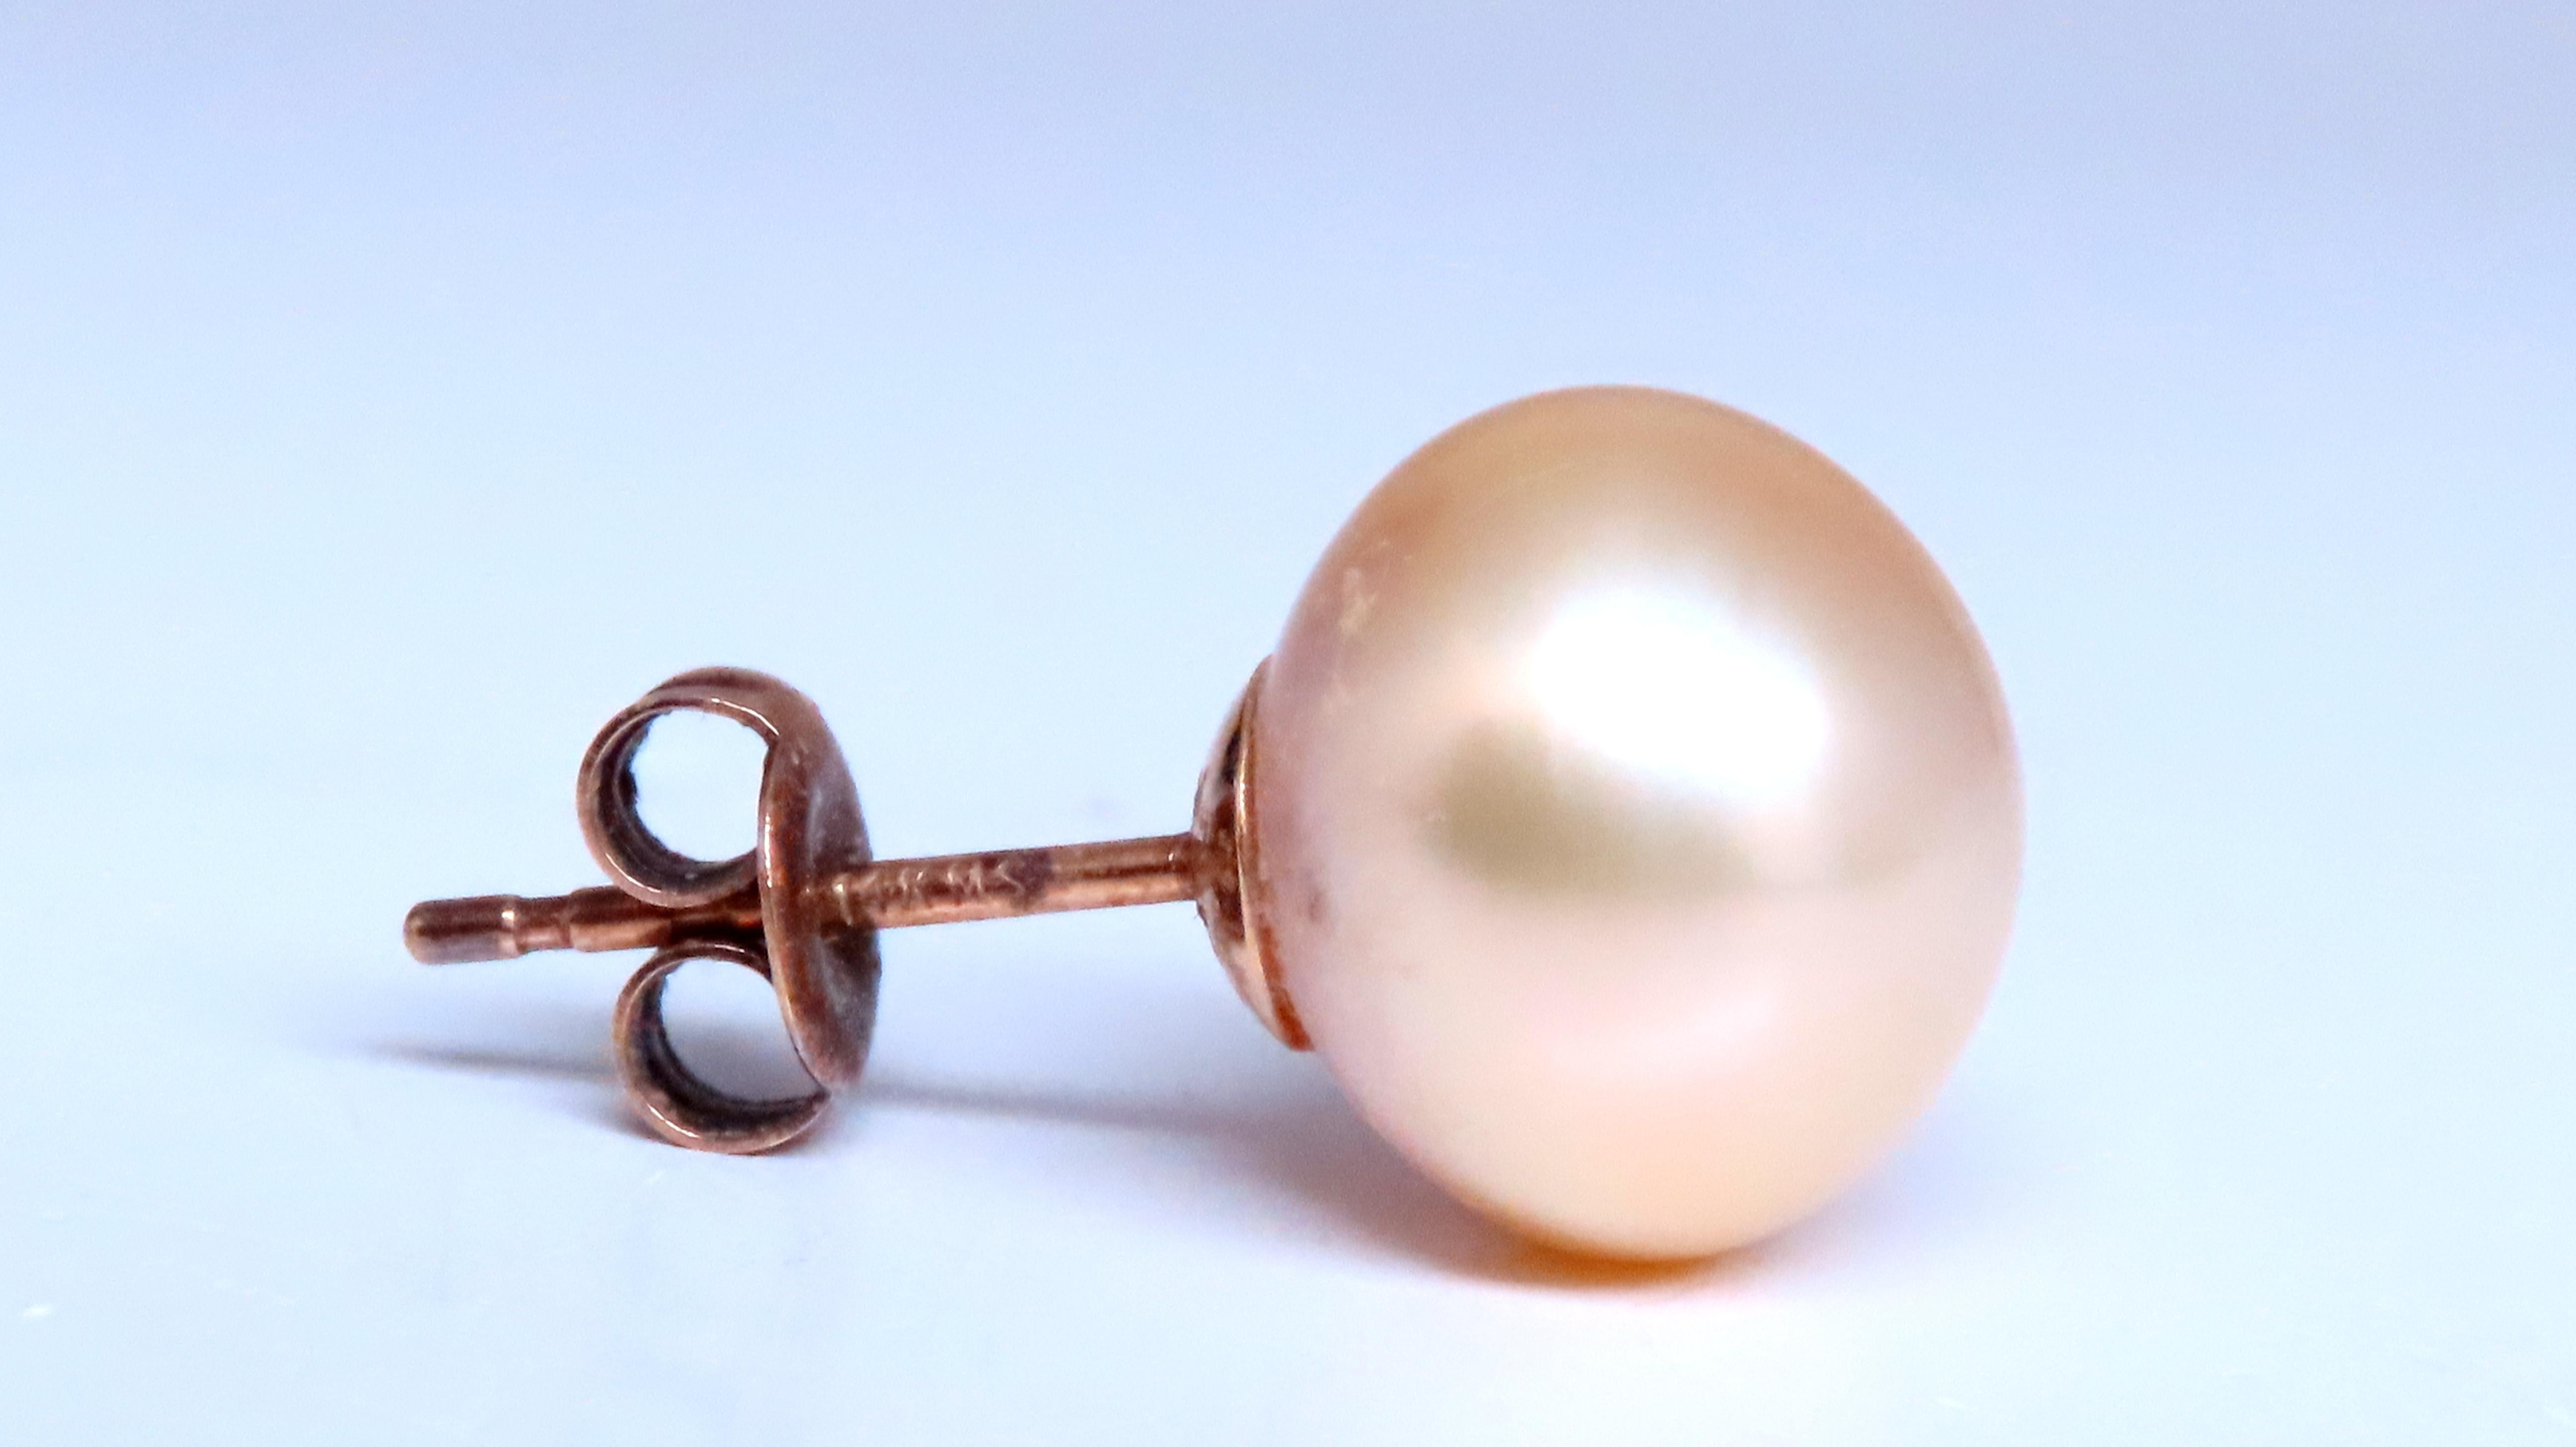 Vintage Perlenohrstecker
10,7mm Barock Perlen
Creme Weiß
14kt. Gold
3.8 Gramm